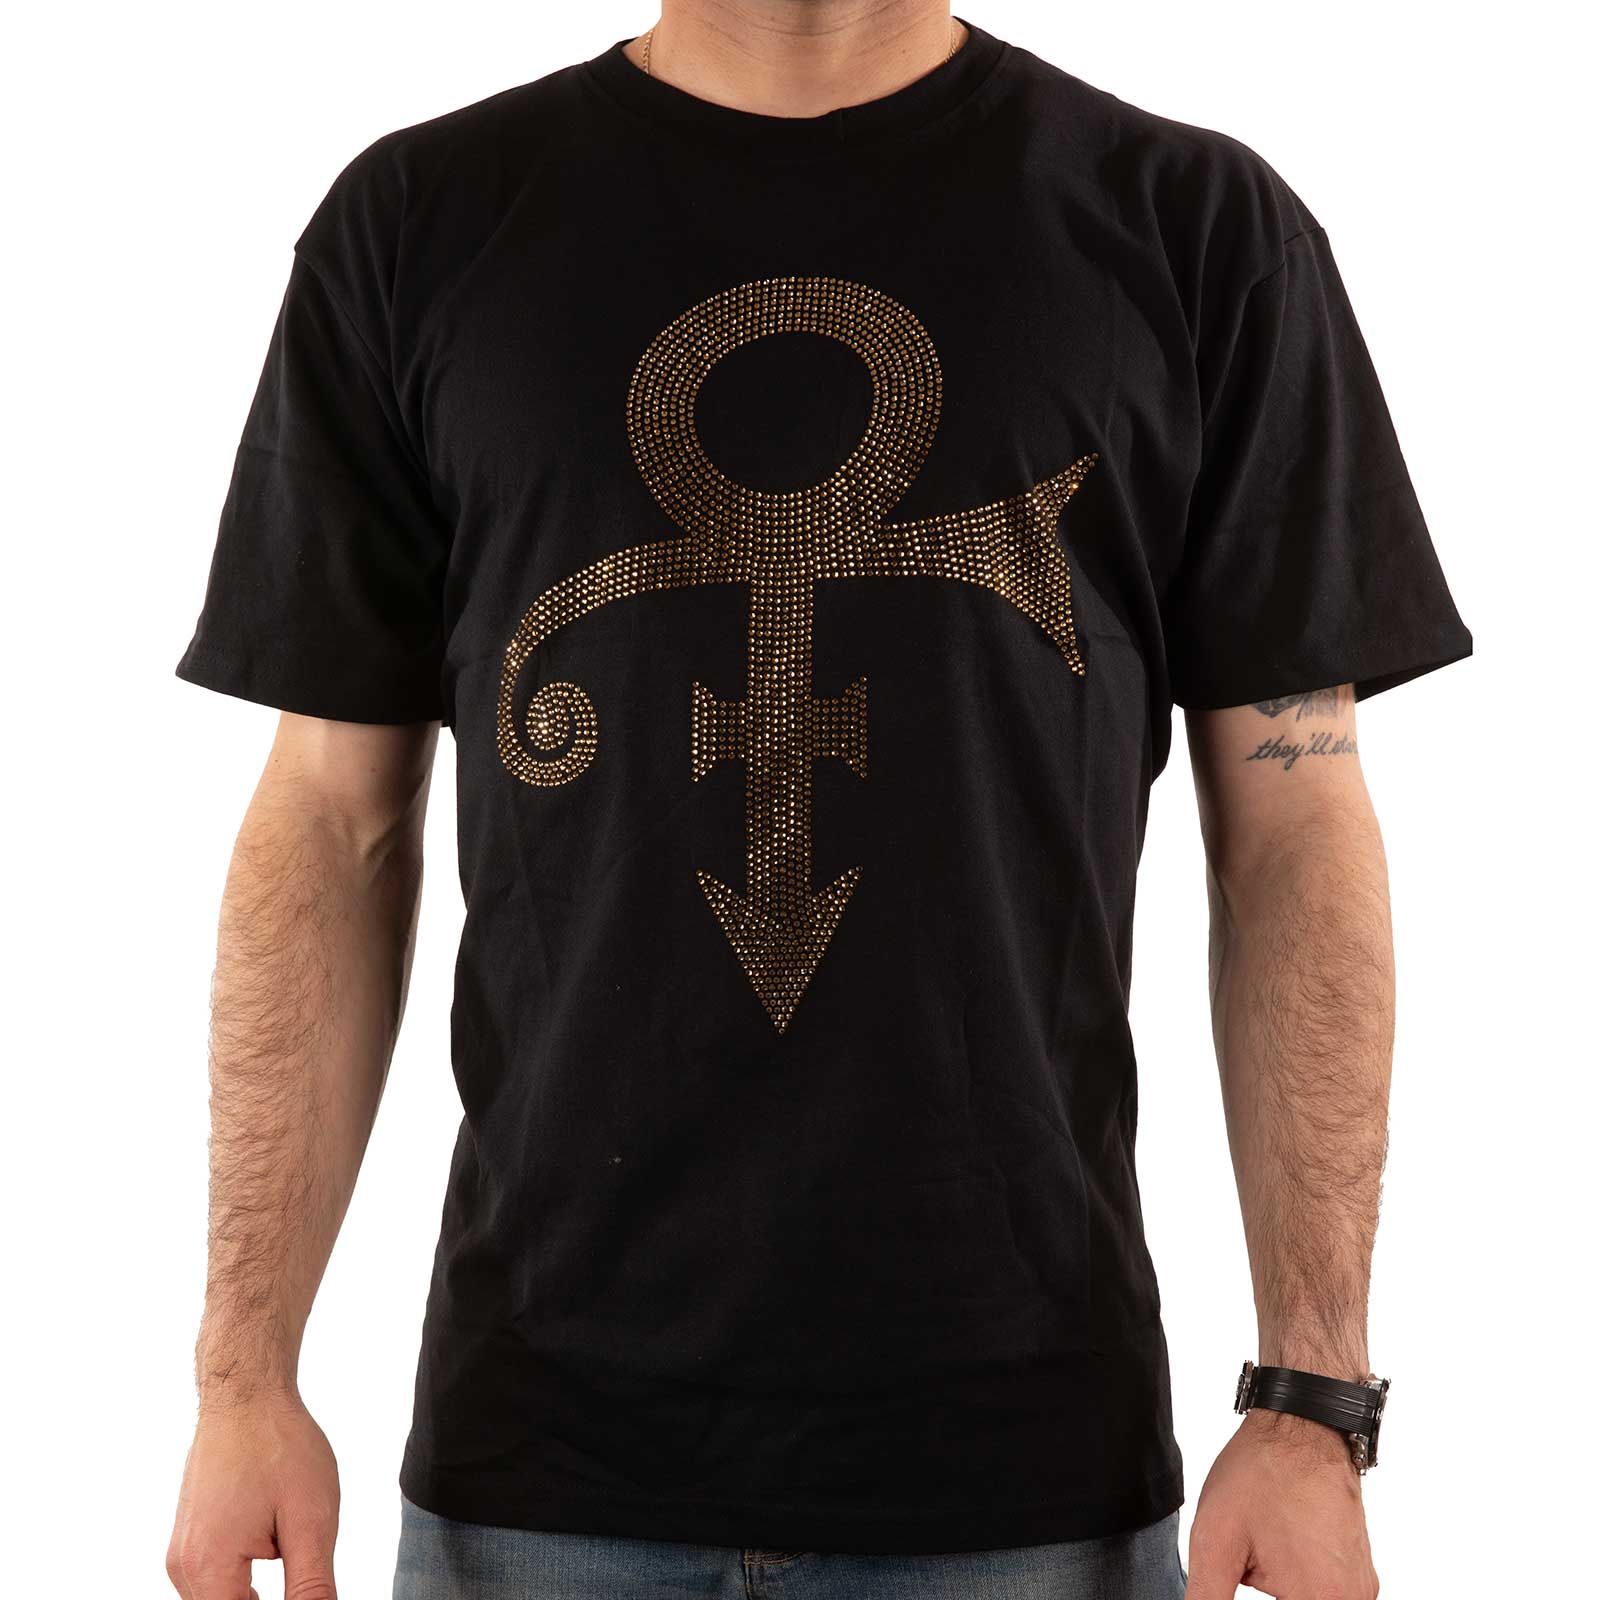 Prince T-Shirt - Symbole d'or (Diamante) - Conception unisexe sous licence officielle